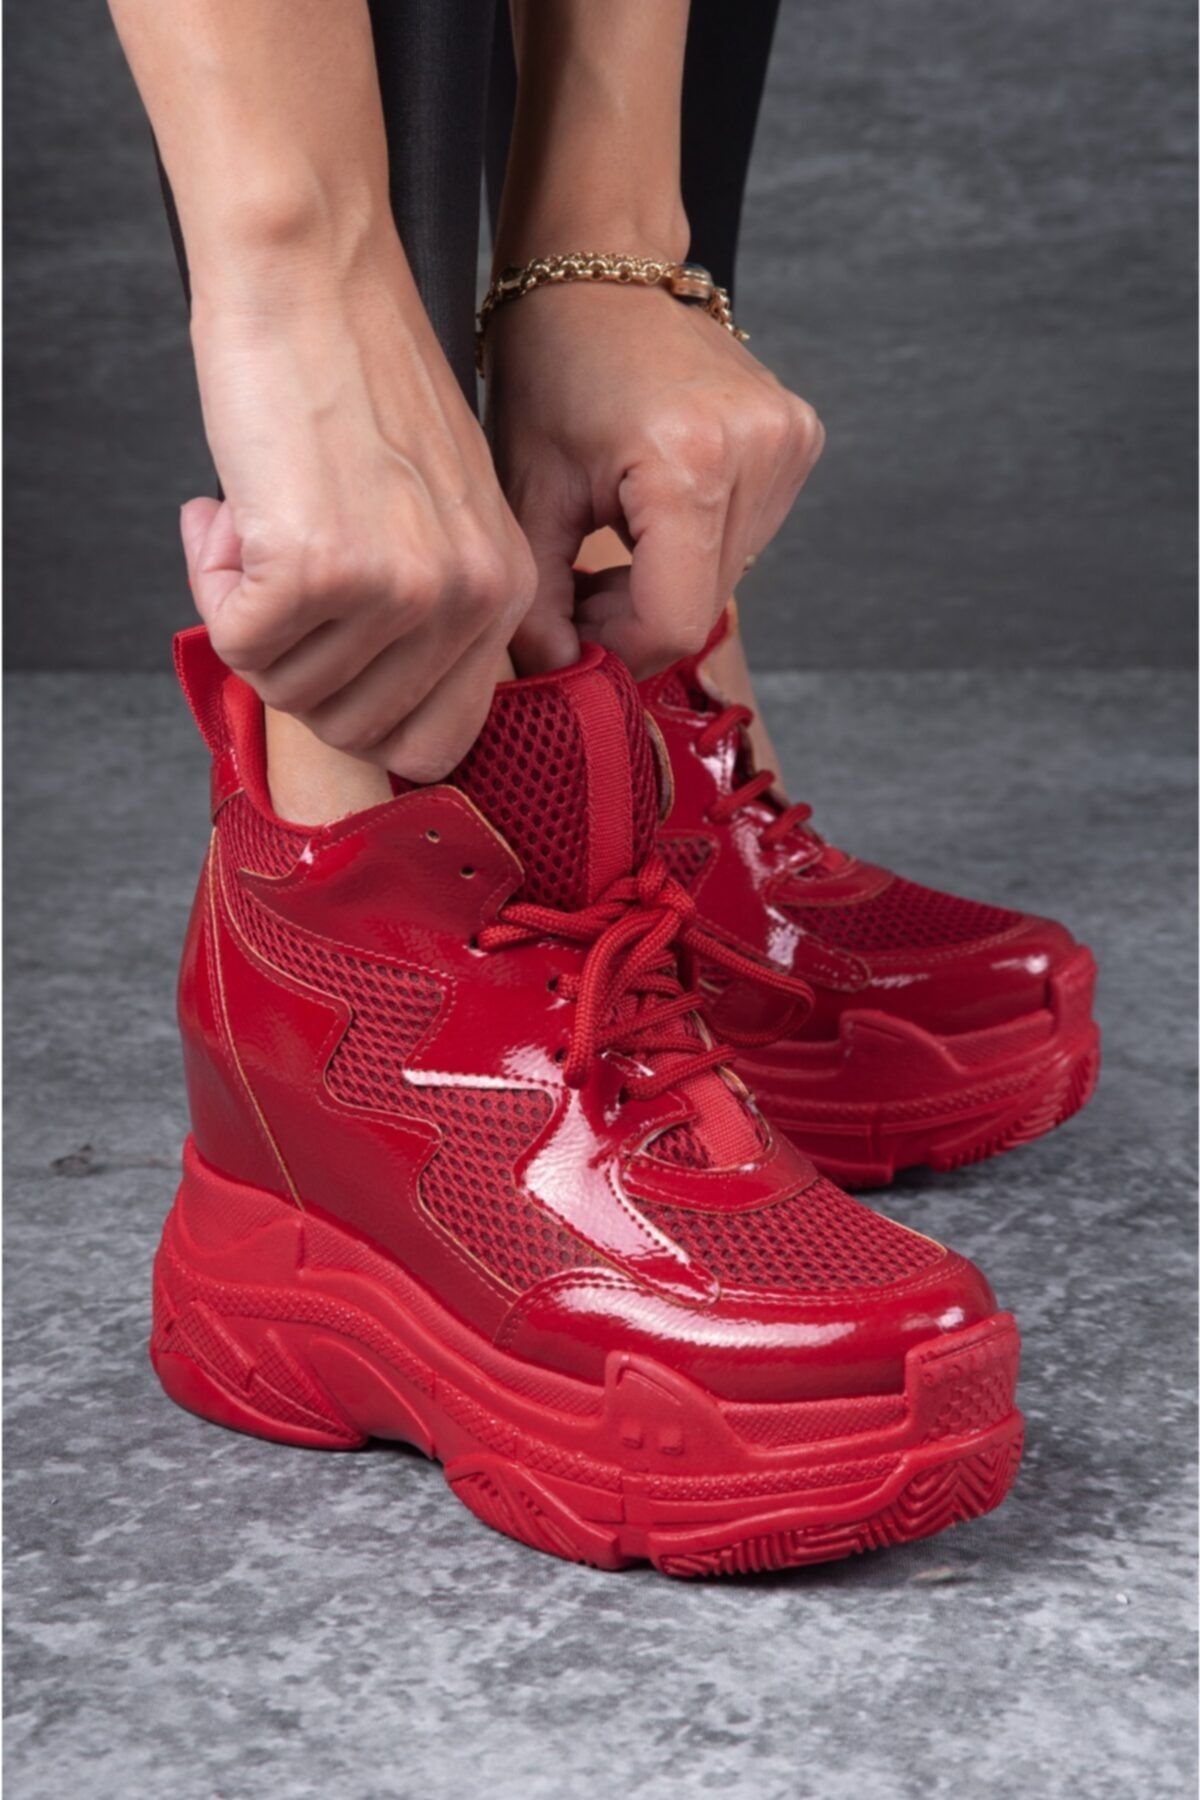 Tarz Topuklar Kadın Bağcıklı Gizli Dolgu Topuklu Parlak Kırmızı Spor Ayakkabı